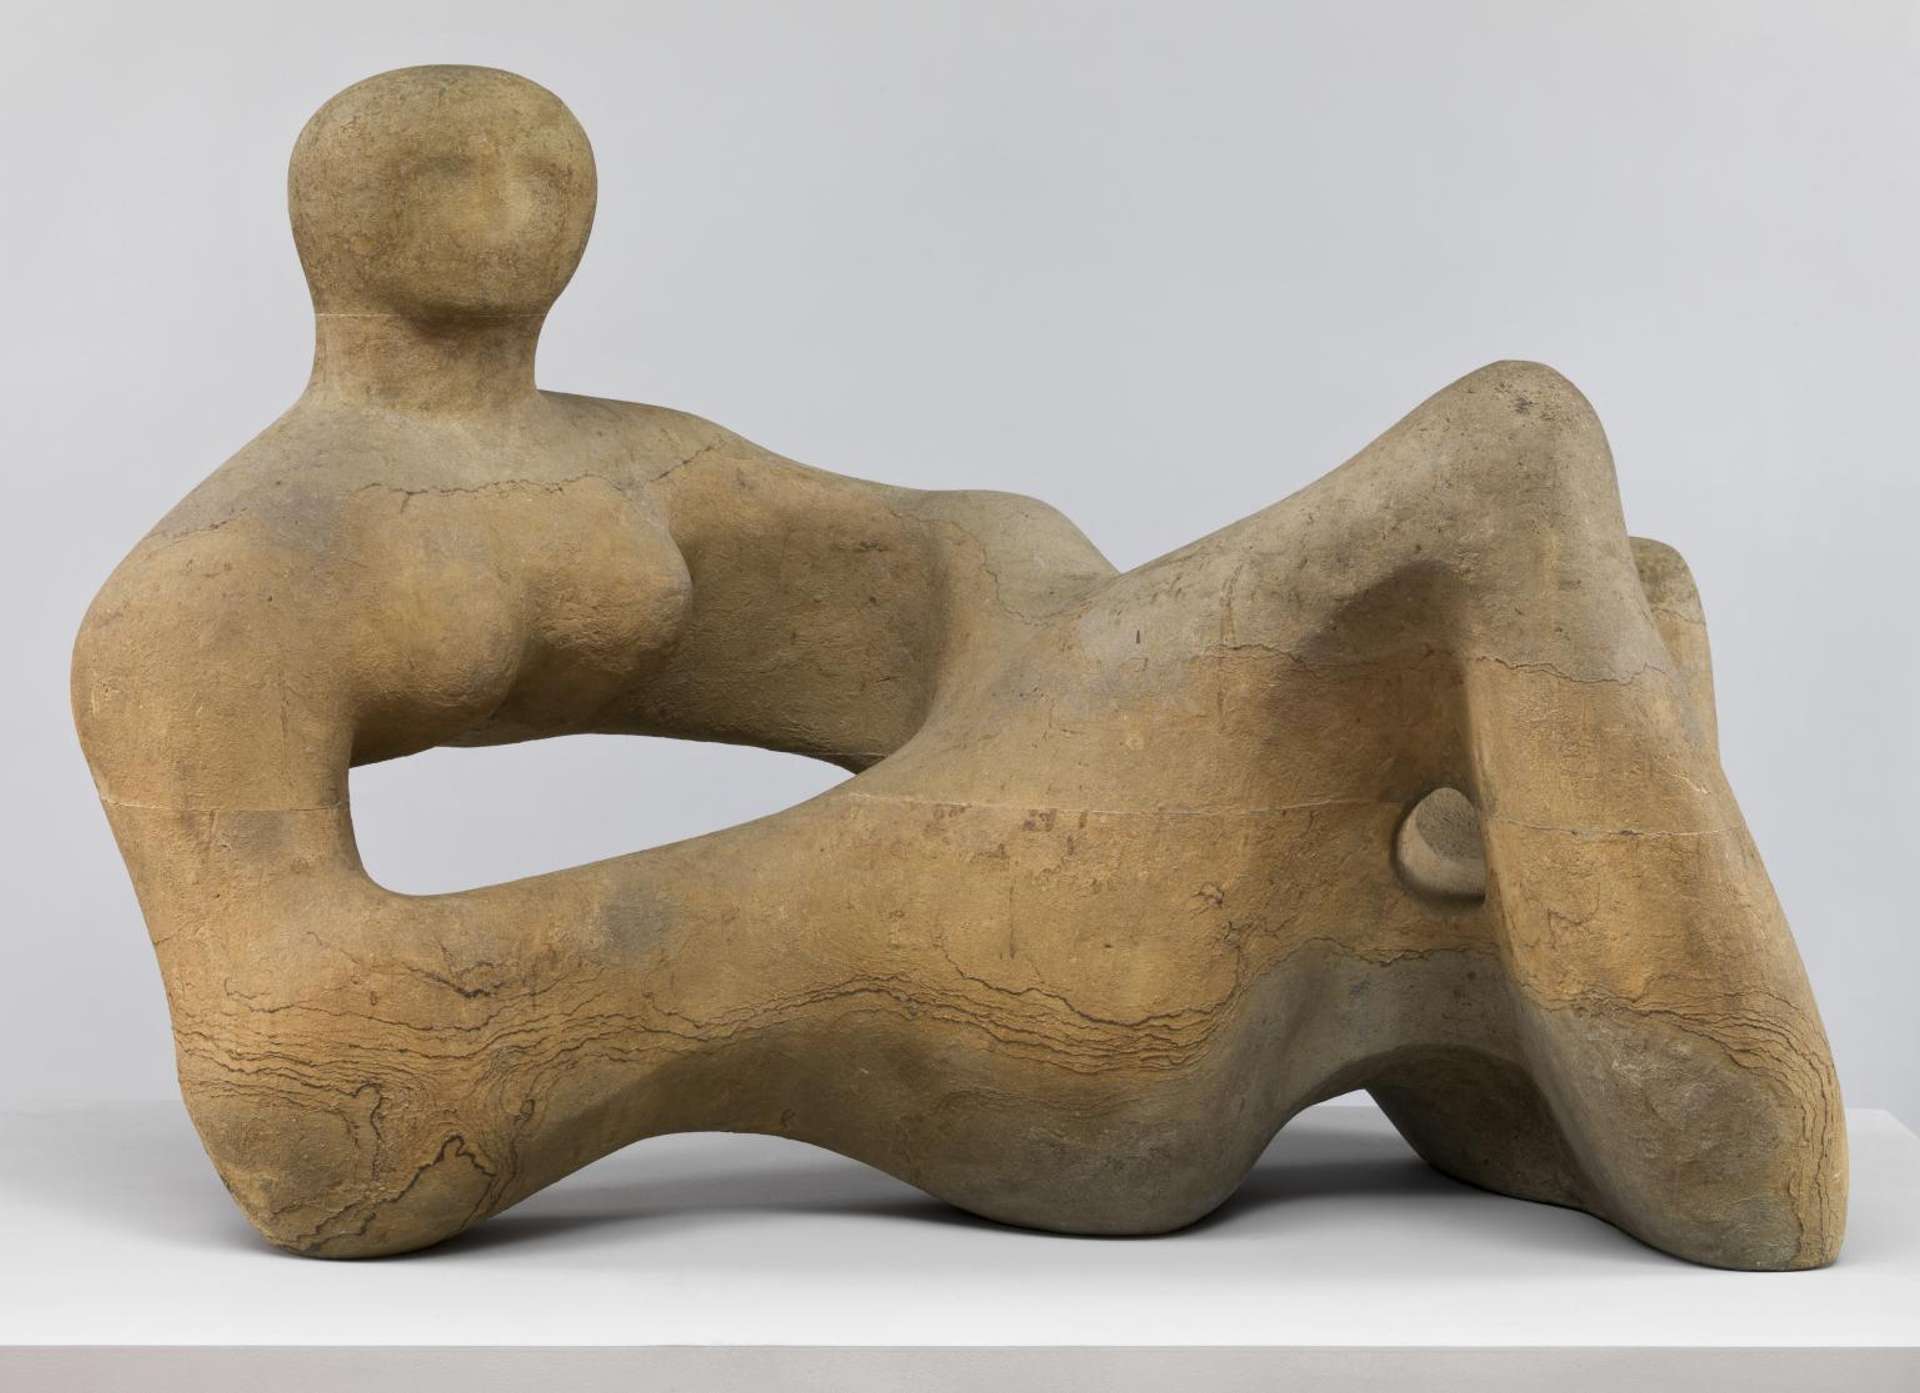 Wooden sculpture of an abstract reclining wooden figure.